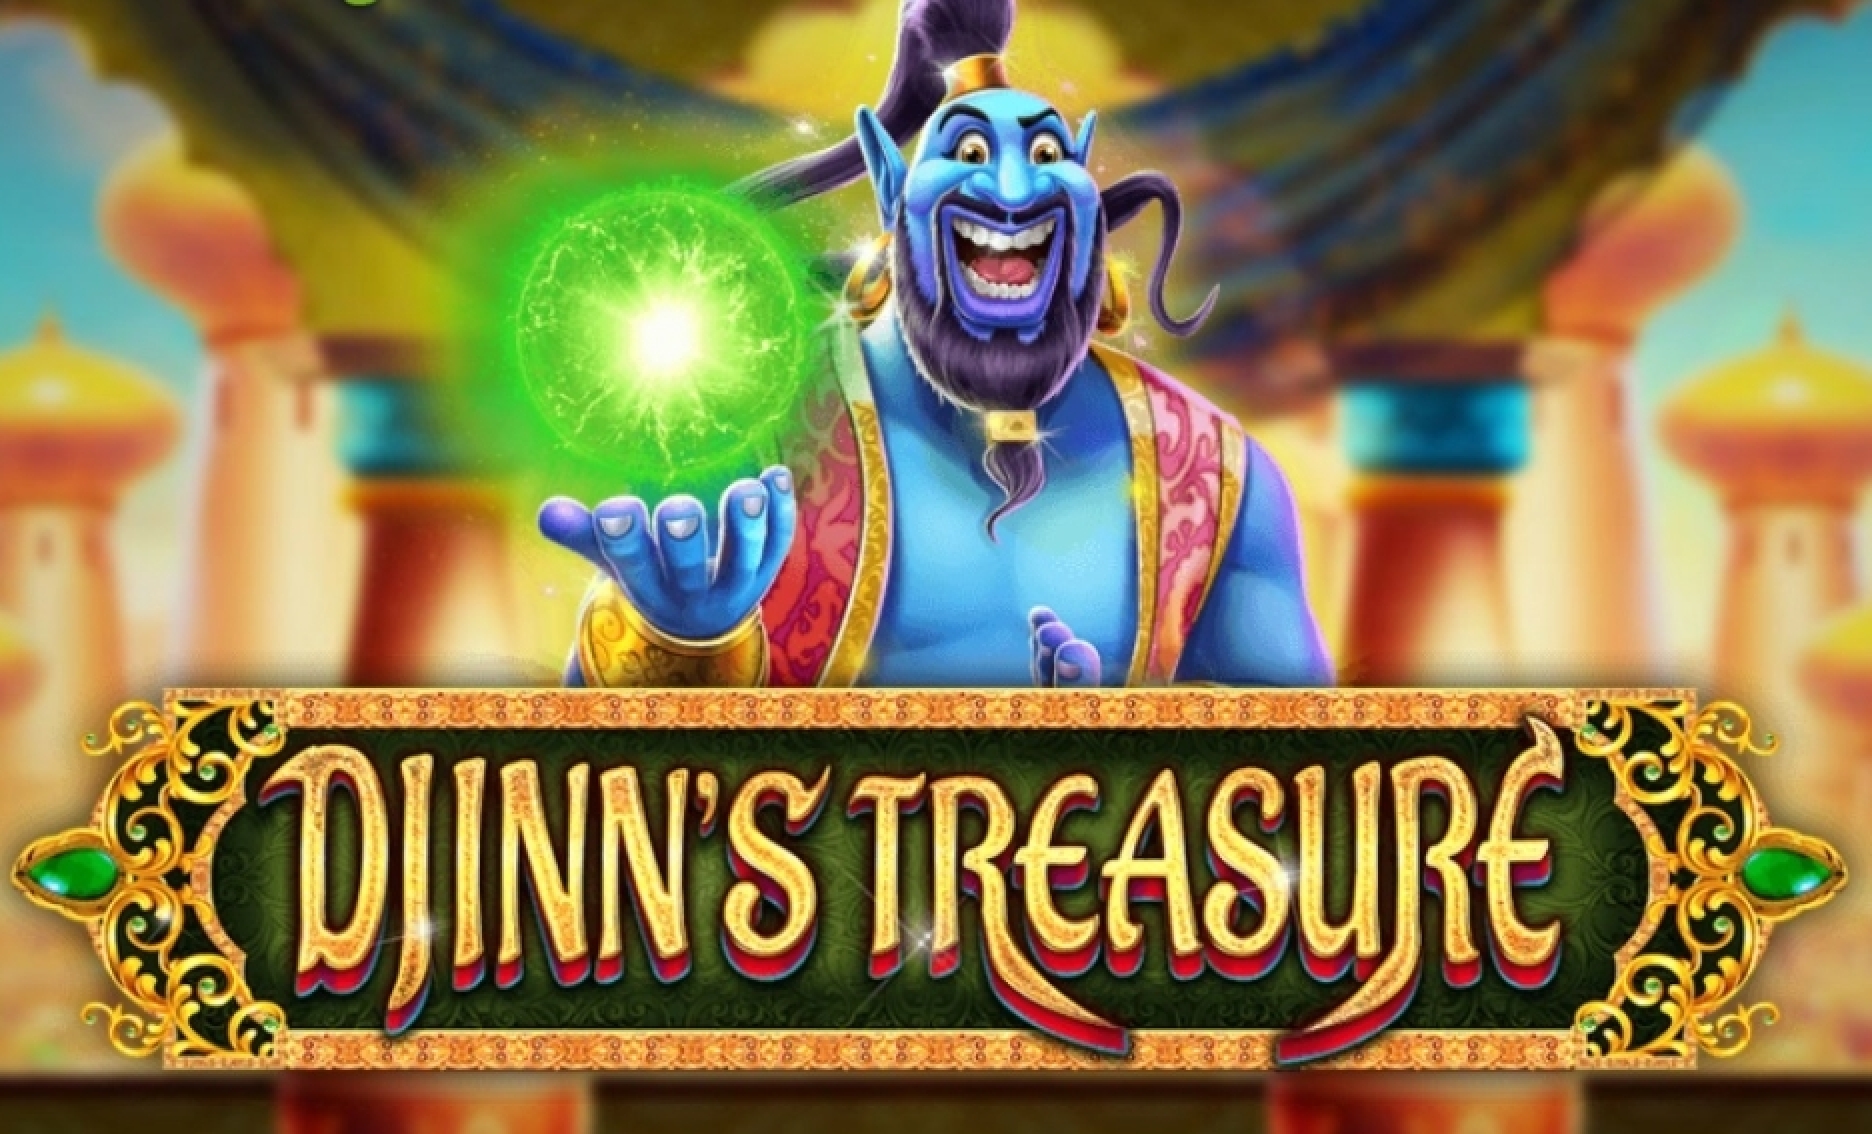 The Djinns Treasure Online Slot Demo Game by Rocksalt Interactive